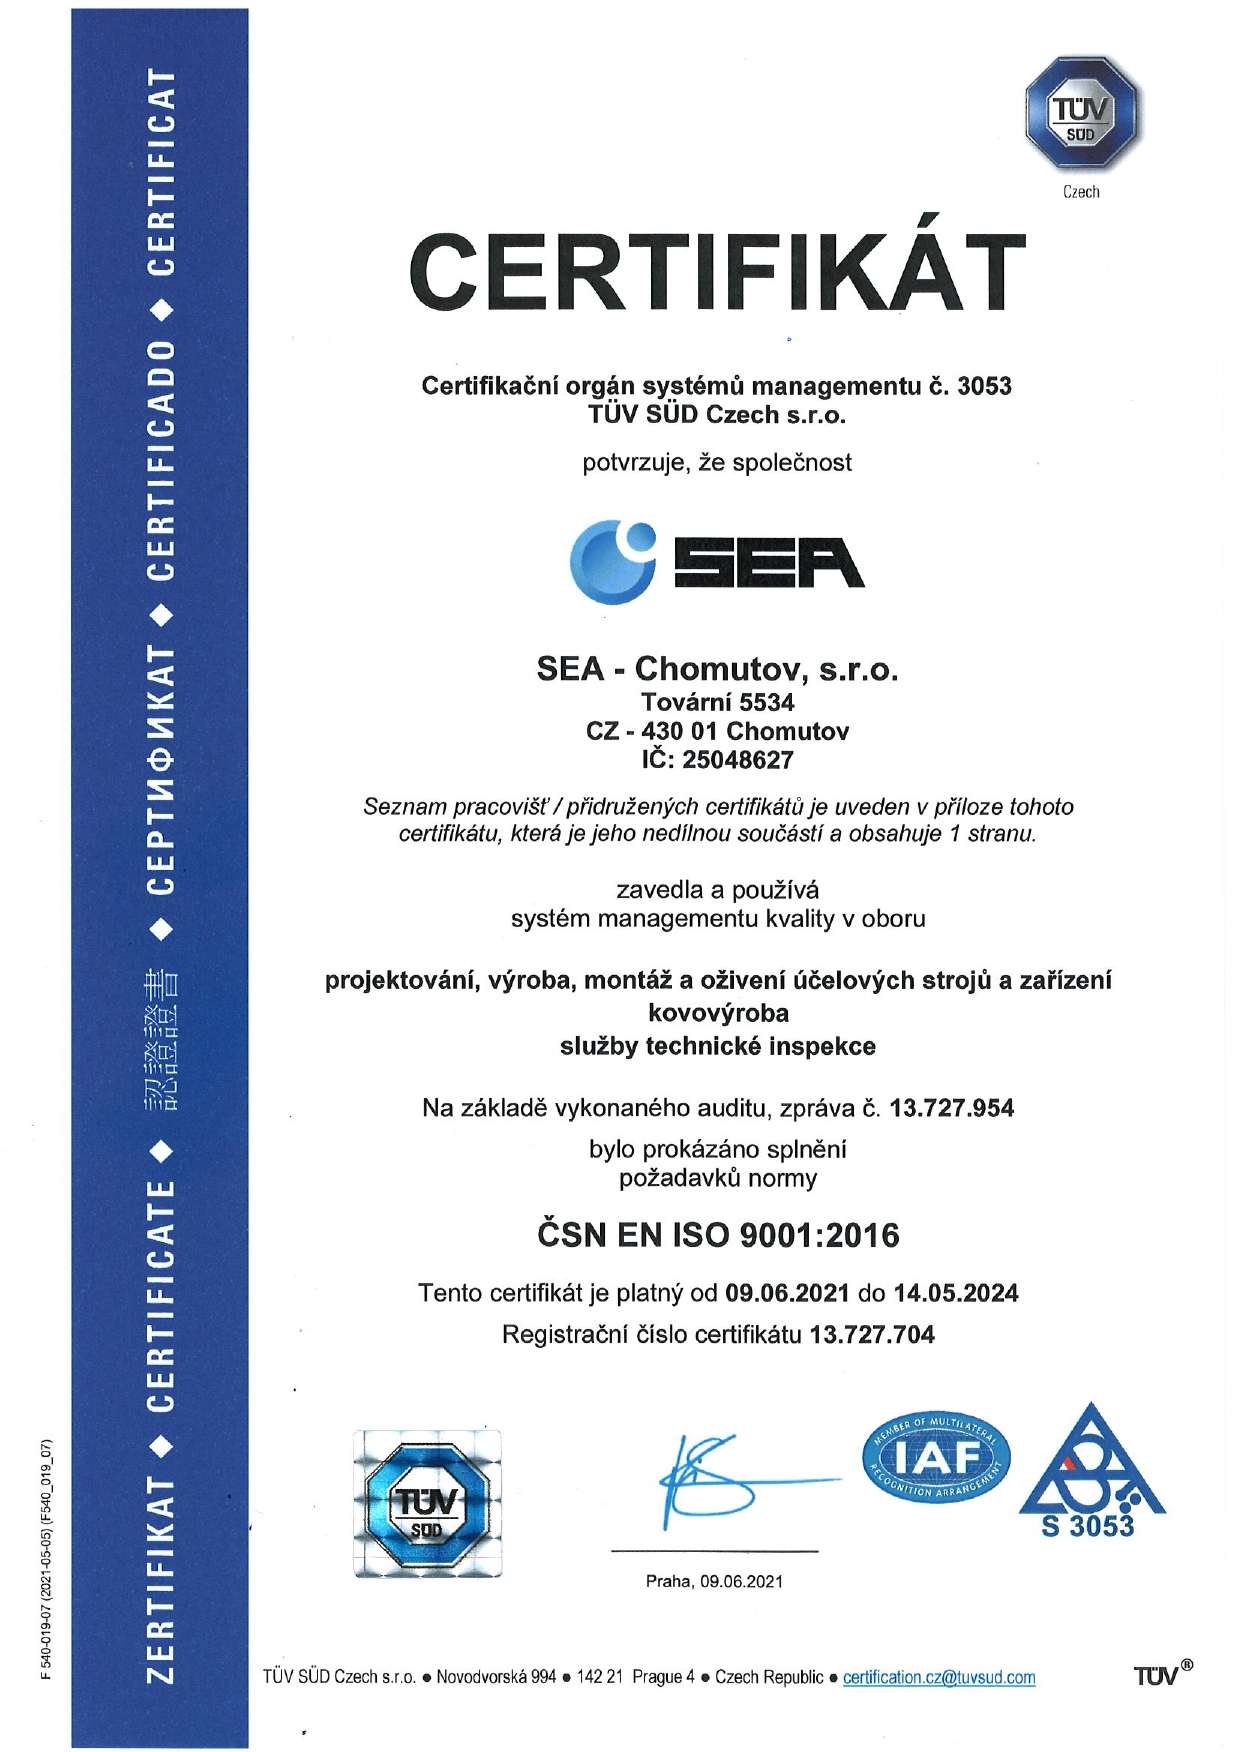 Certifikát systému managementu kvality podle ČSN EN ISO 9001:2016